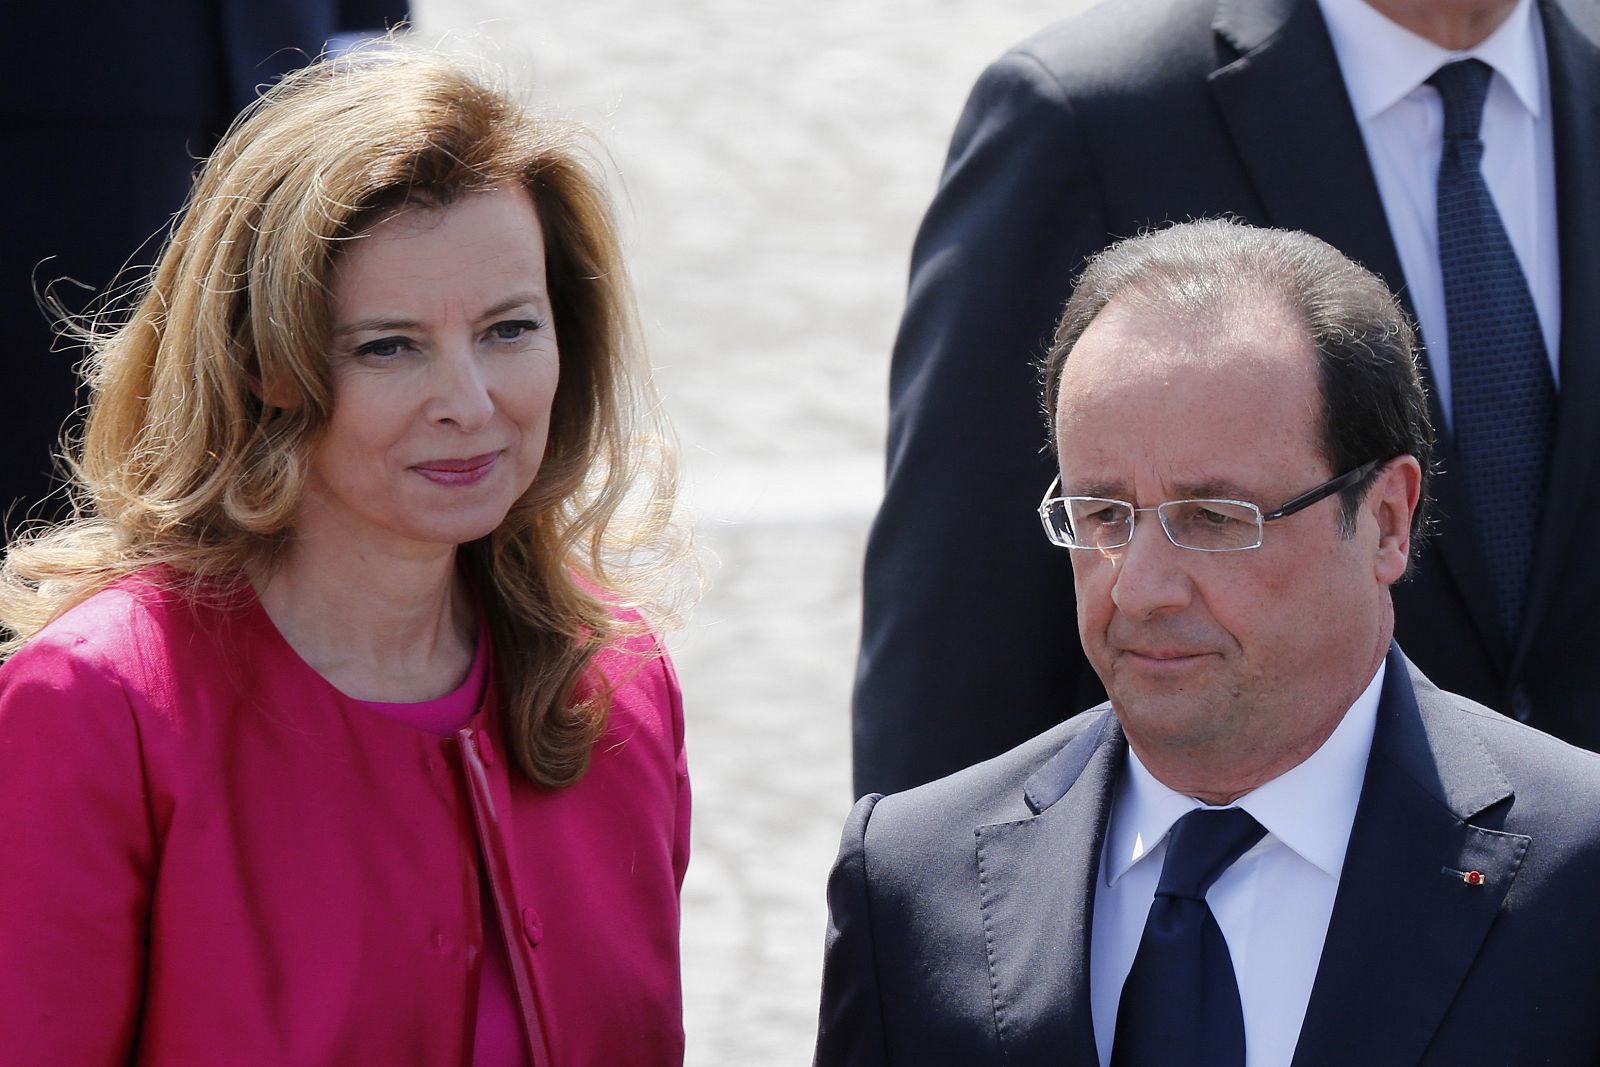 Valérie Trierweiler y François Hollande se han dado varios días de reflexión para aclarar su situación.